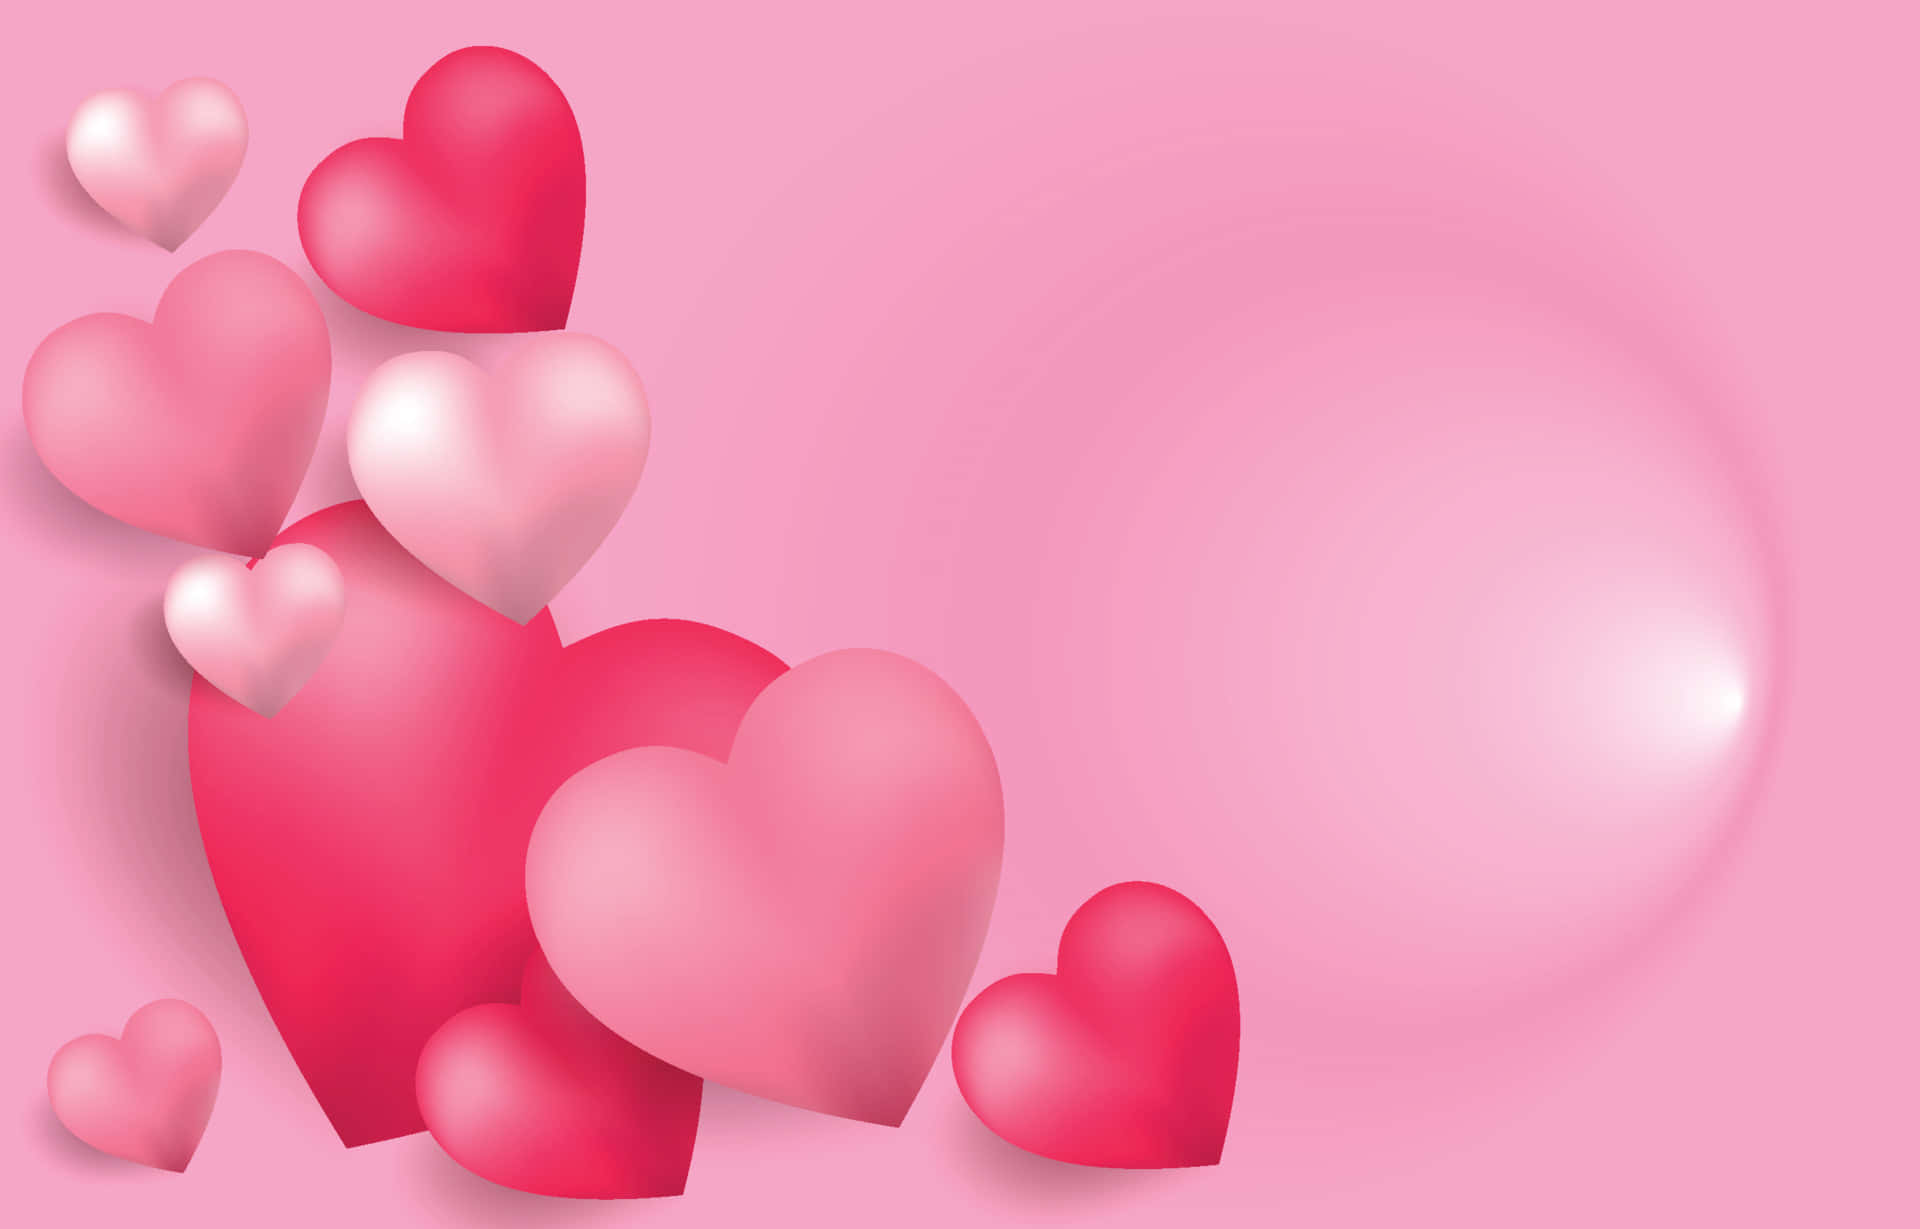 love heart wallpaper for desktop